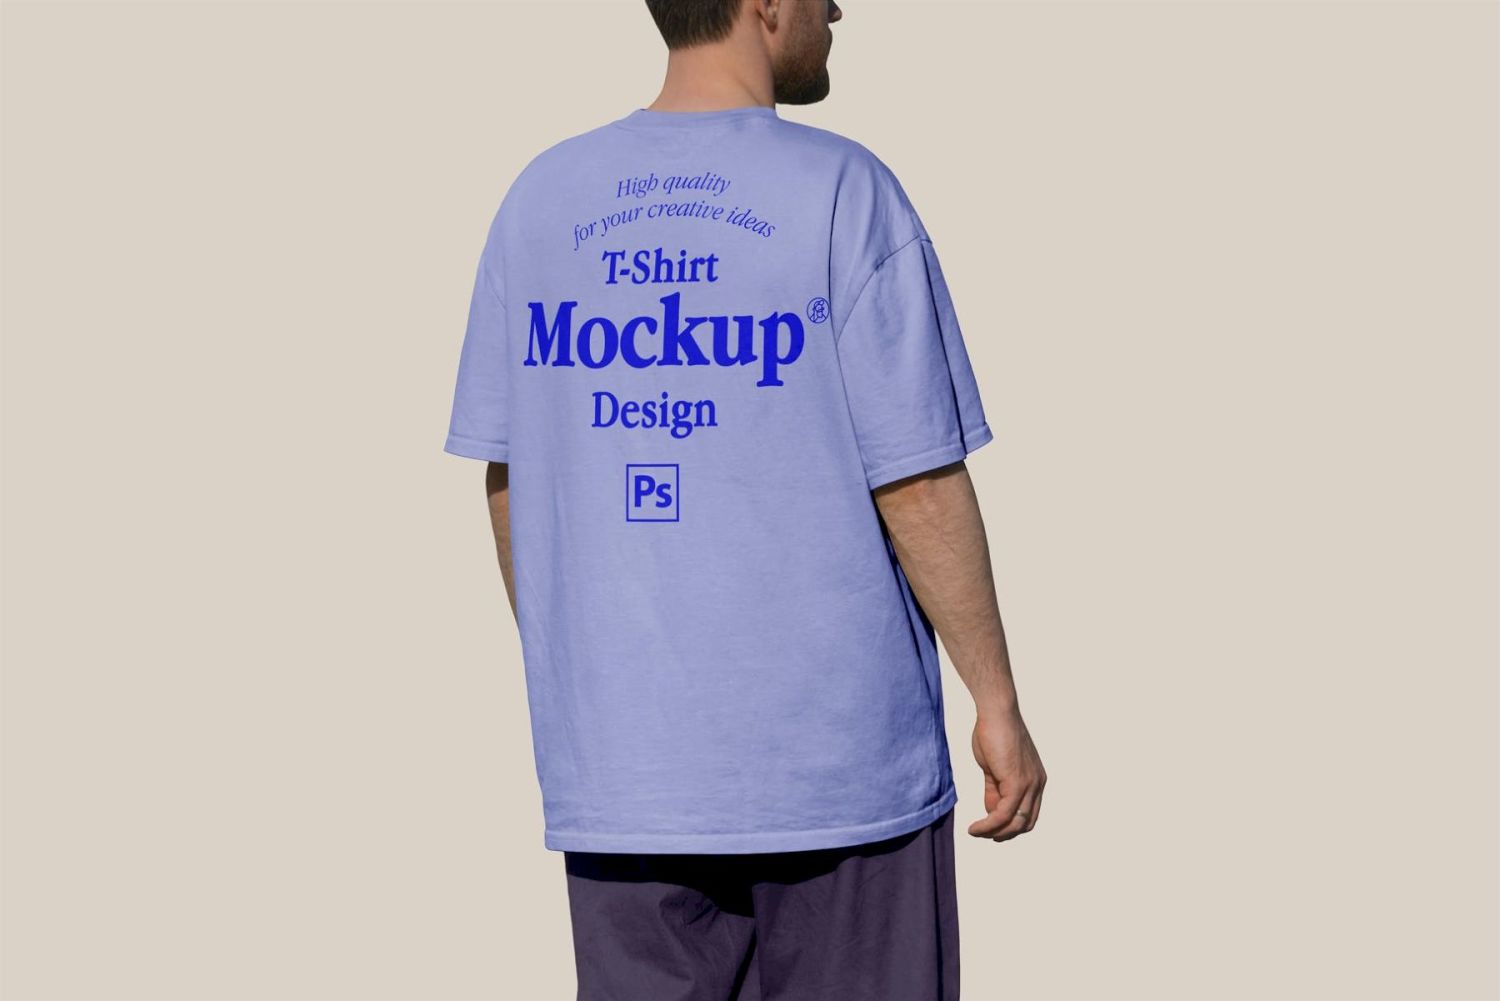 T 恤样机设计 T-shirt Mock-up Design插图3